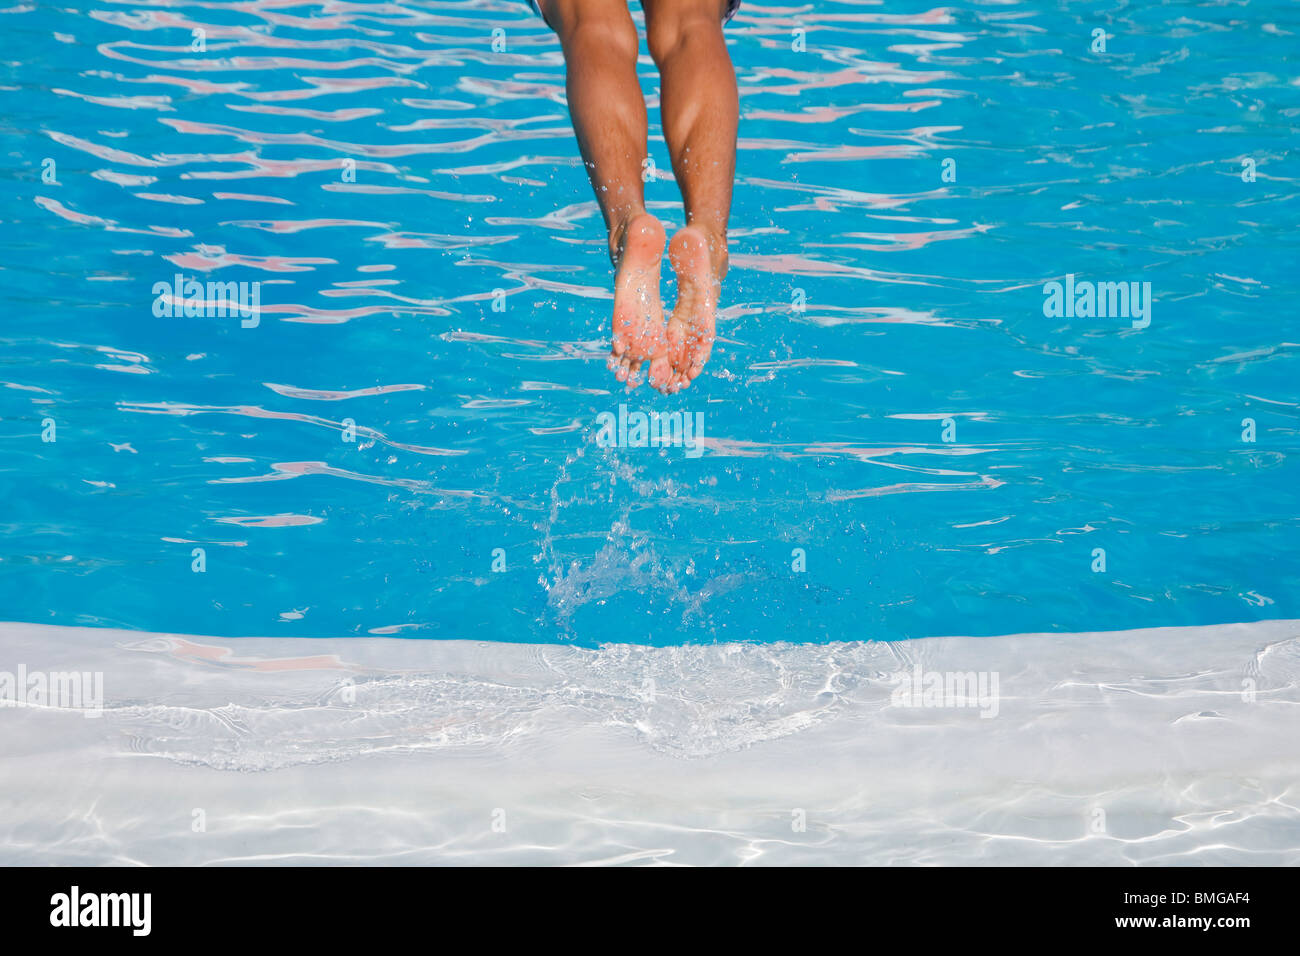 Hombre de zambullirse en una piscina de color azul Foto de stock